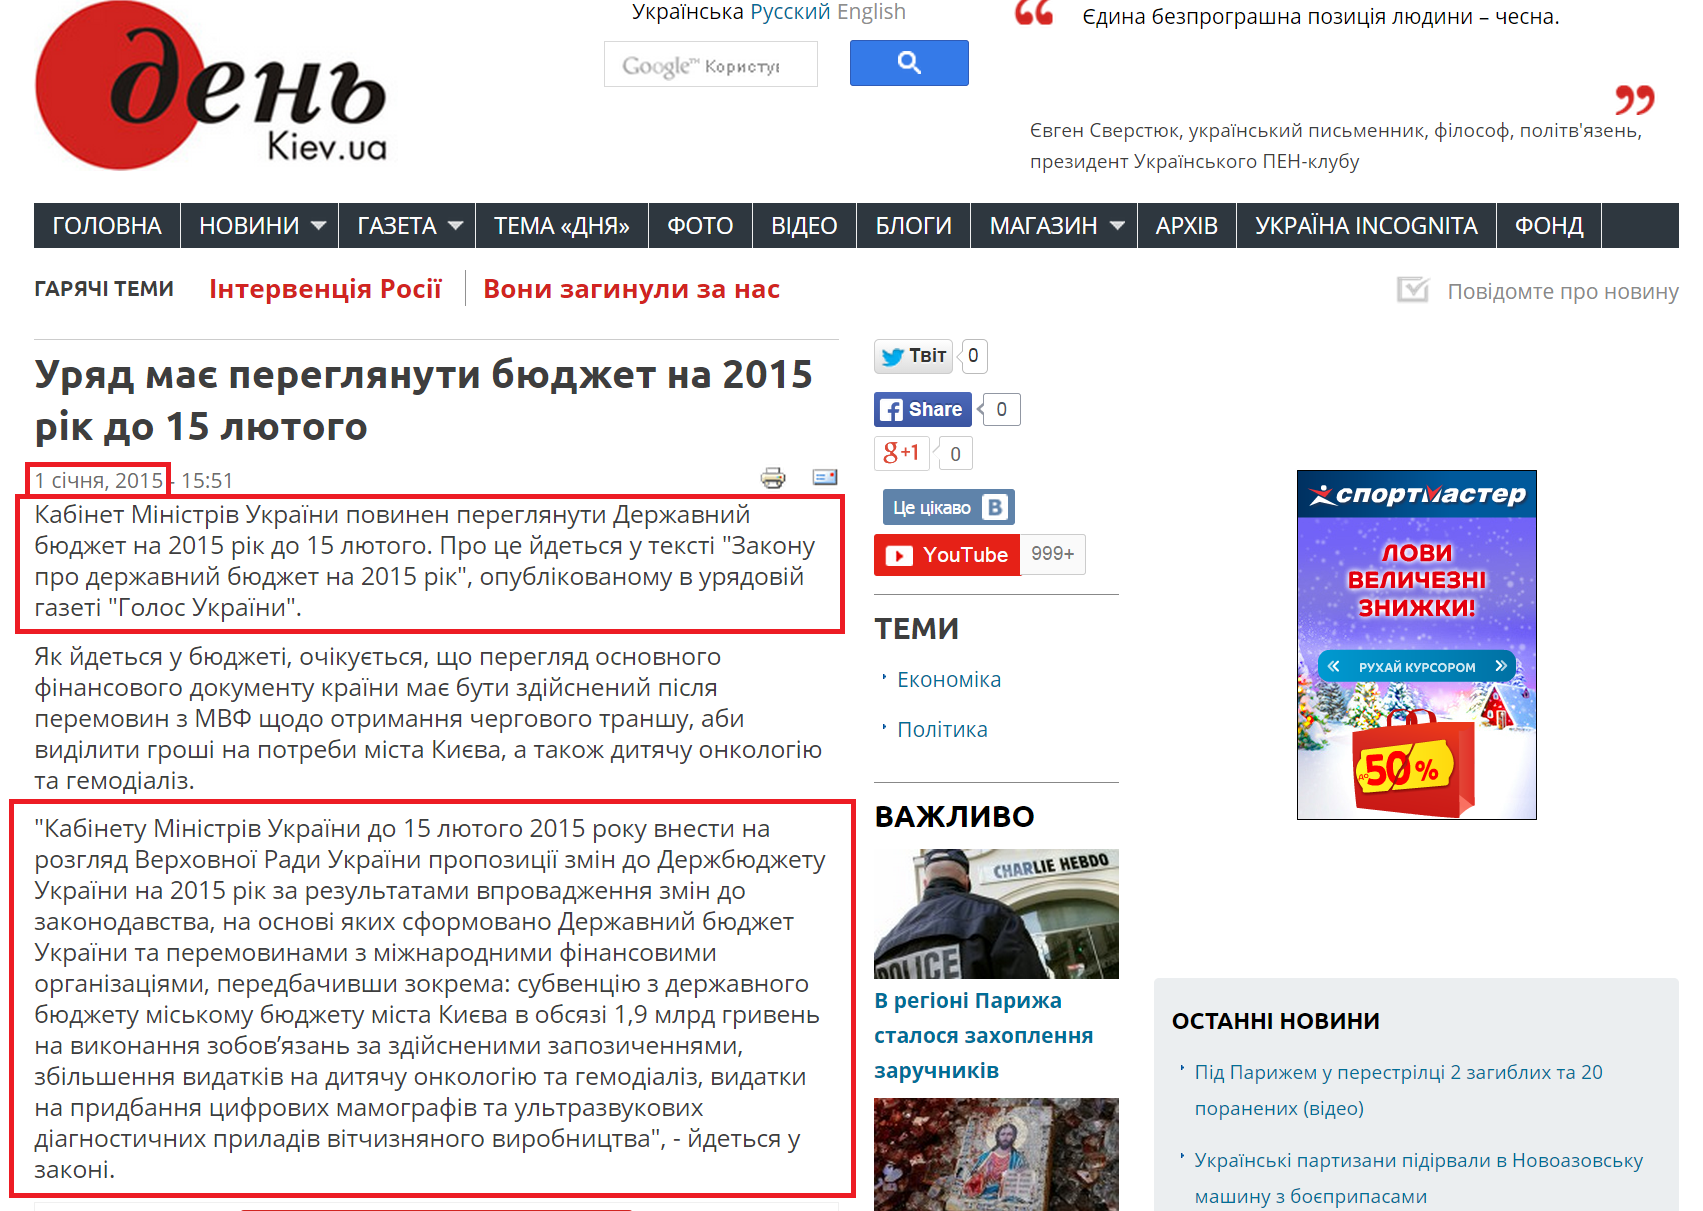 http://www.day.kiev.ua/uk/news/010115-uryad-maye-pereglyanuty-byudzhet-na-2015-rik-do-15-lyutogo